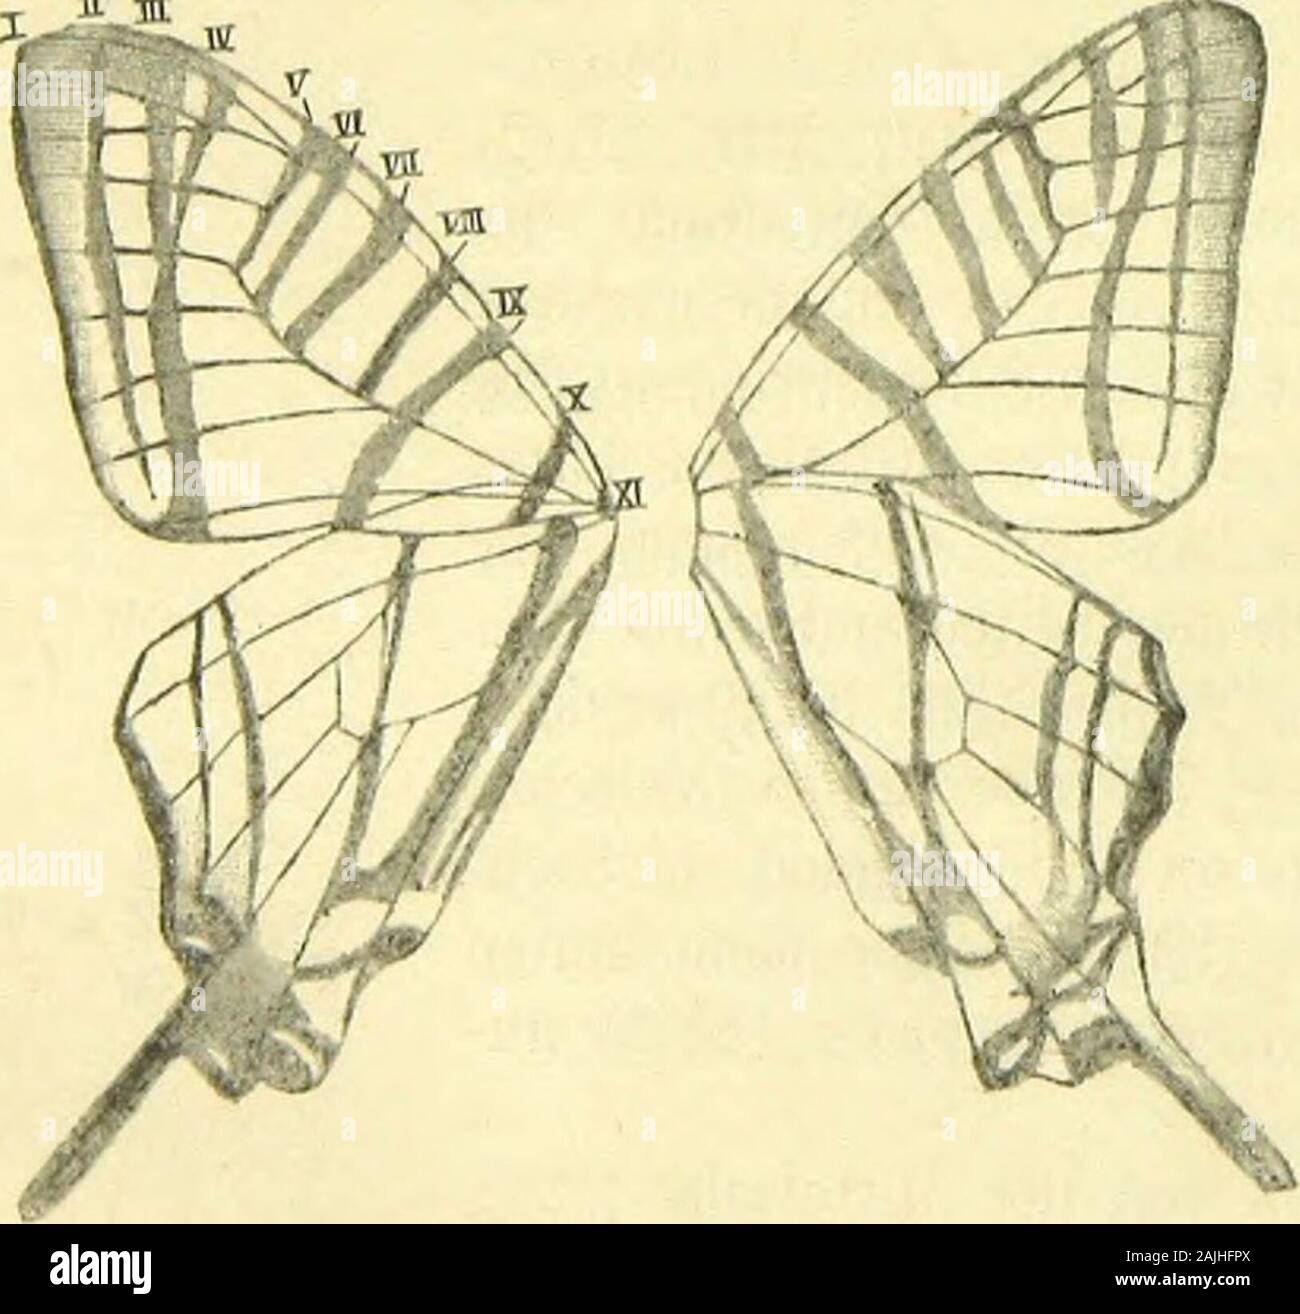 Die Artbildung und Verwandtschaft bei den Schmetterlingen Eine systematische Darstellung der Abänderungen, Abarten und Arten der segelfalter-ähnlichen Formen der gattung Papilio . Auf sie folgt, dieMittelzelle (MZ) nach vorn begrenzend und mit der Costalader nachinnen zu durch einen kleinen verbunden Ast, die sonst ungegabelte Sub-costalader (SC), hierauf, den Seitenrand der Mittelzelle bildend, dieobere, mittlere und untere Discocellularader (ODC, MDC,UDC), zwischen denen wiederum die obere und untere radiale-ader (o, UR) entspringen. Die Medianader (M) hat wie auf denVorderflügeln drei AES Foto Stock